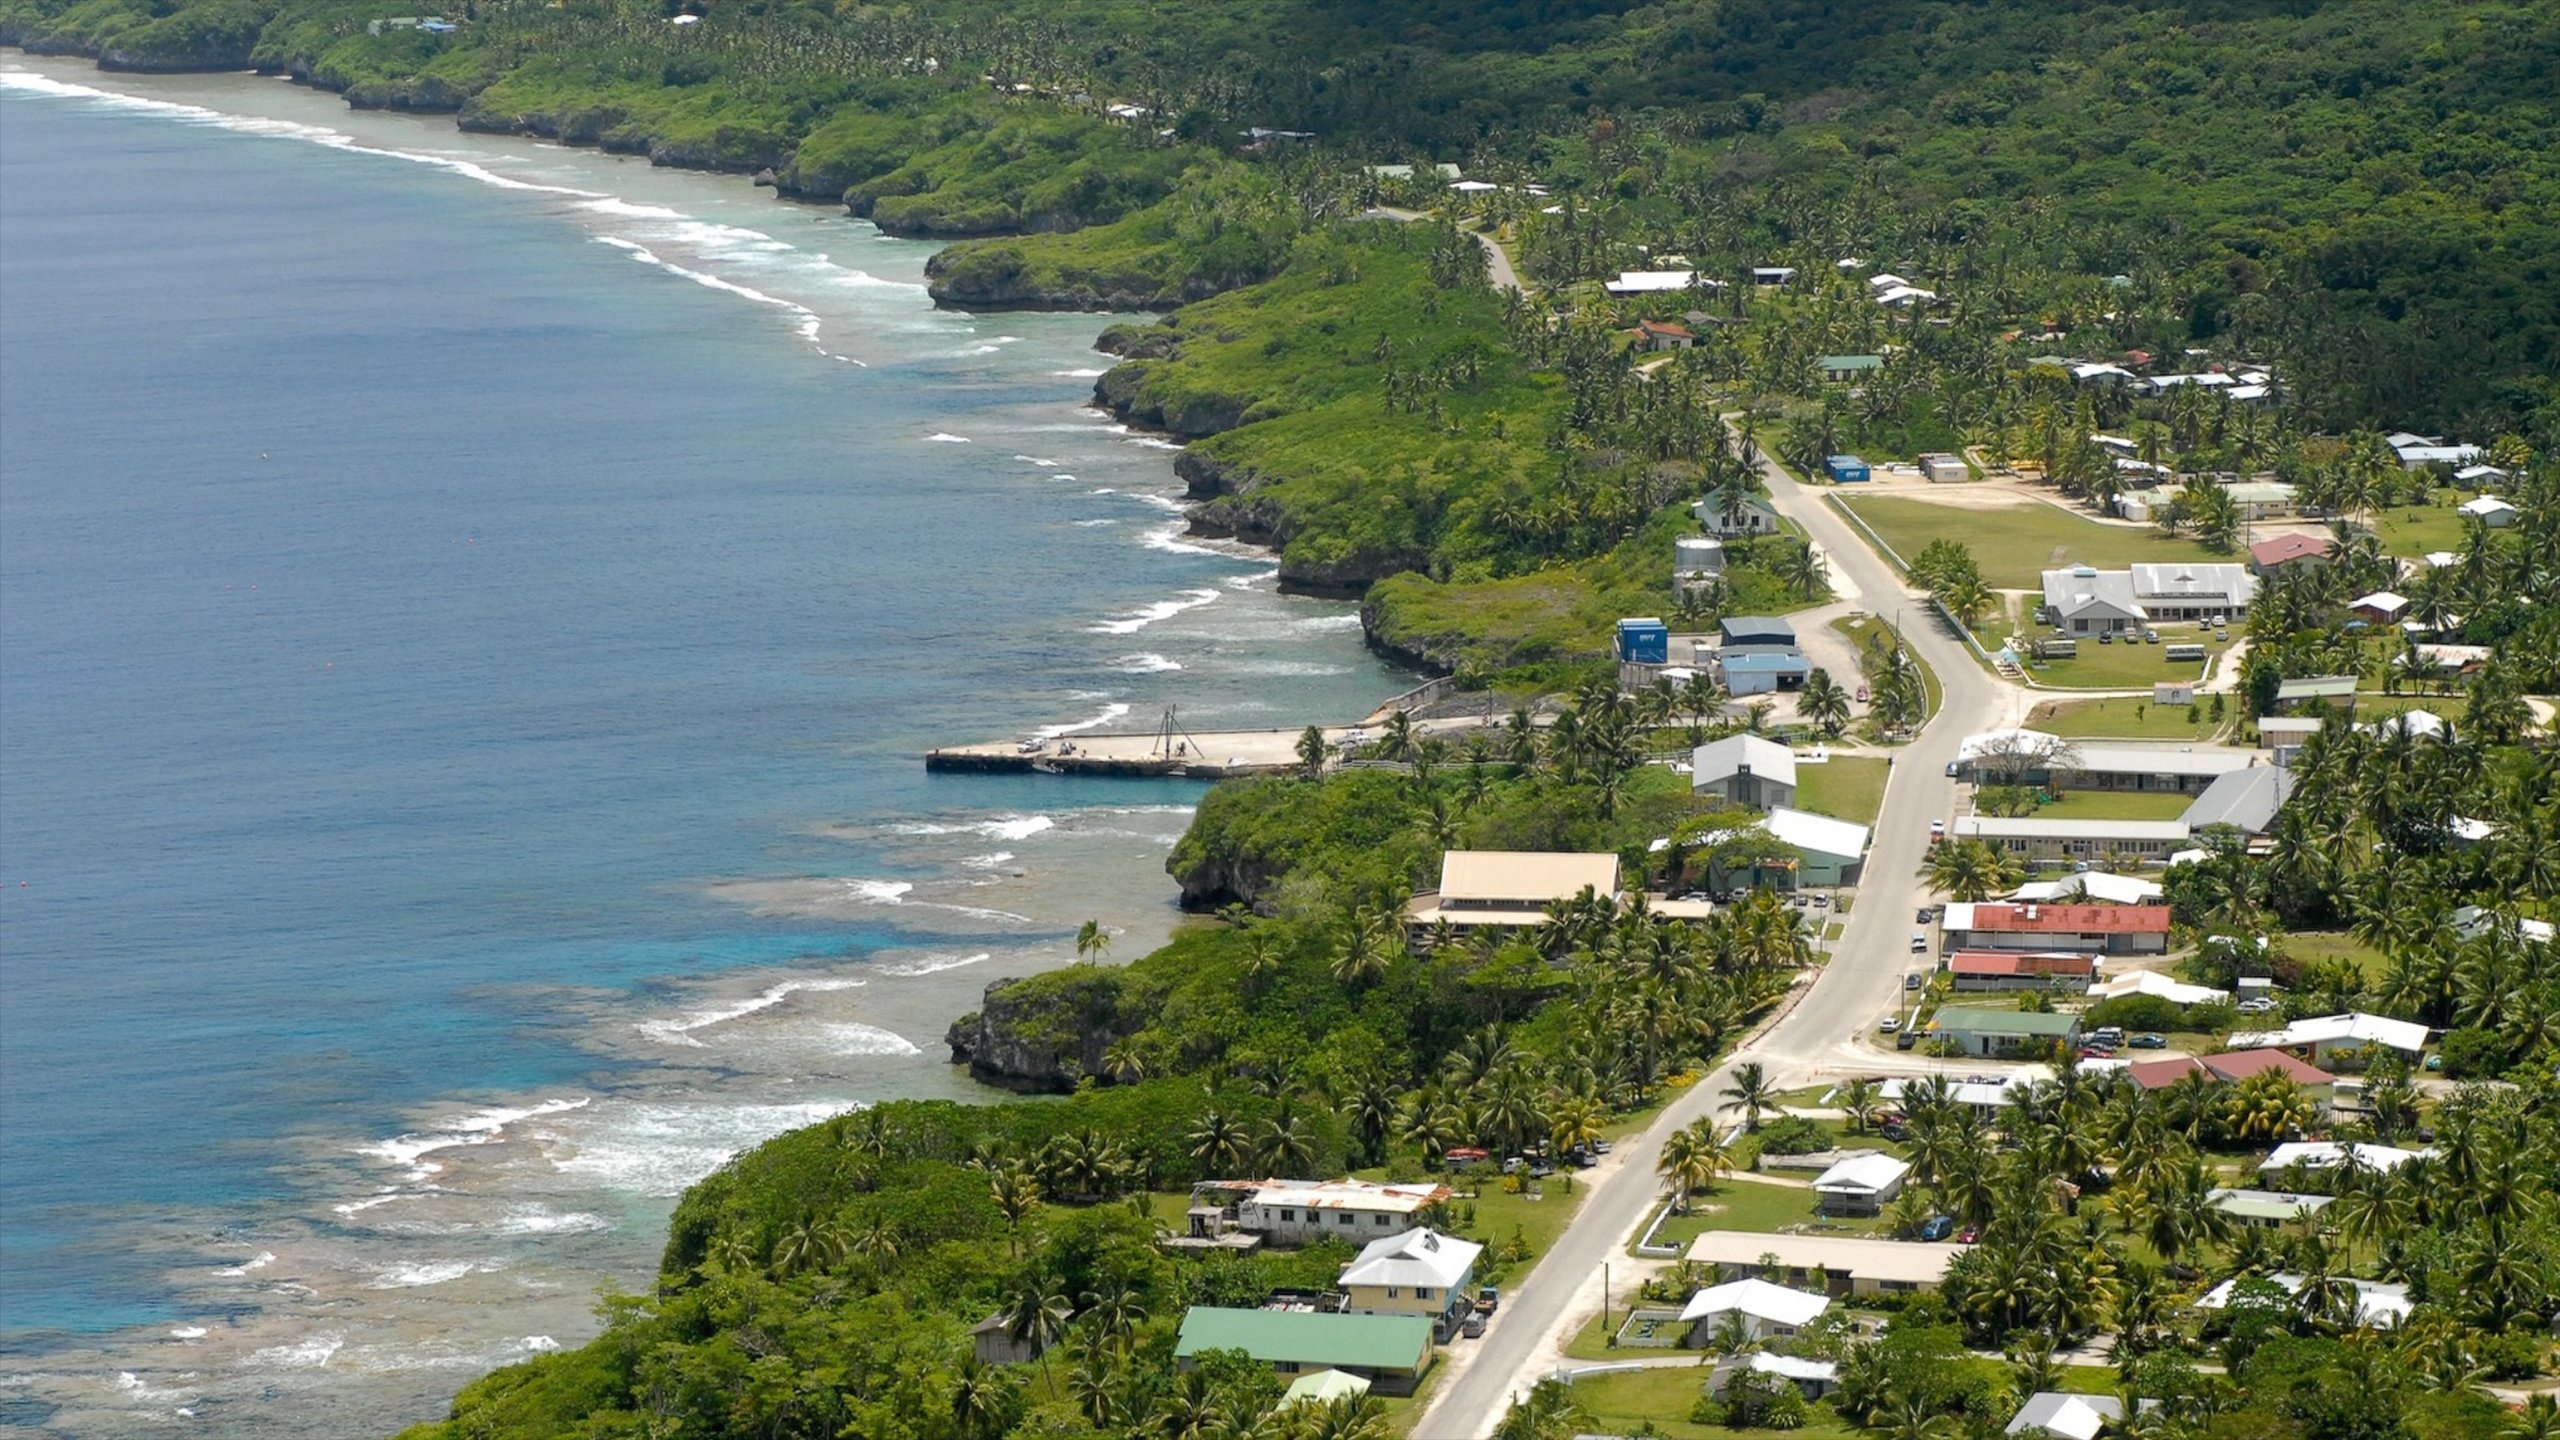 Alofi, Visit Alofi, Travel guide, Niue, 2560x1440 HD Desktop